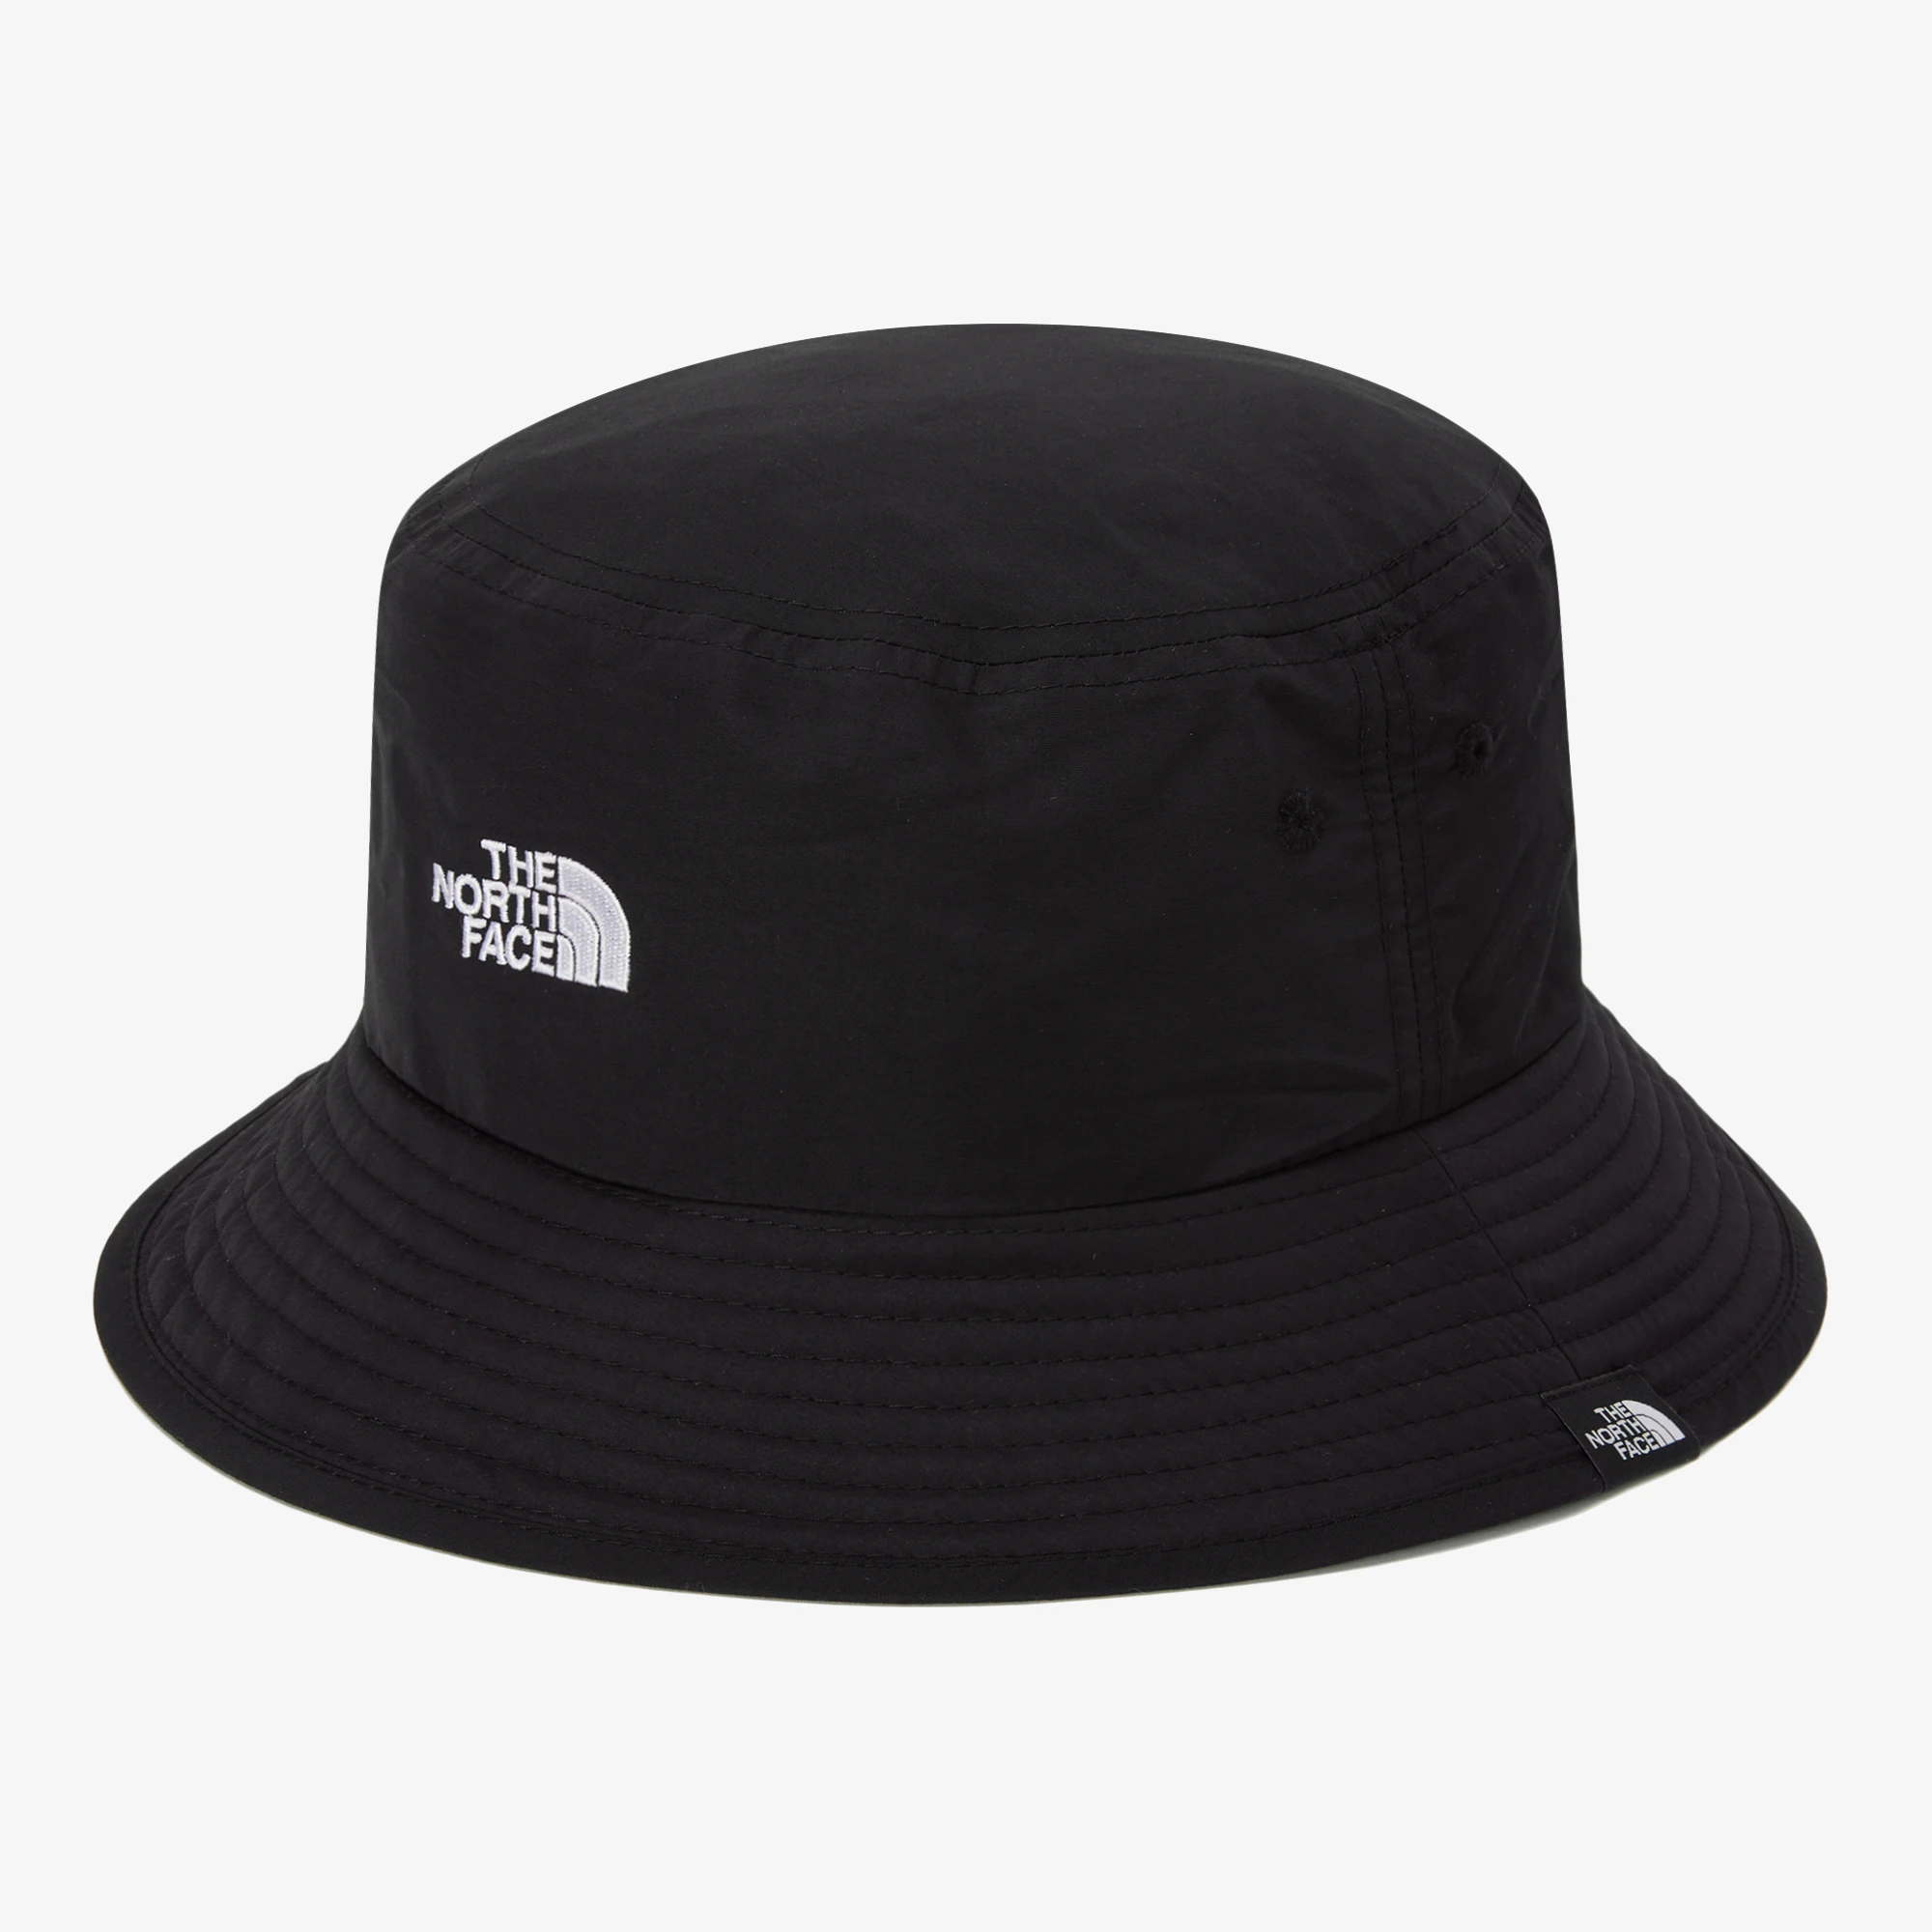 推荐【Brilliant|北面特惠】北面生态渔夫帽 ECO BUCKET HAT BLACK NE3HP04J商品